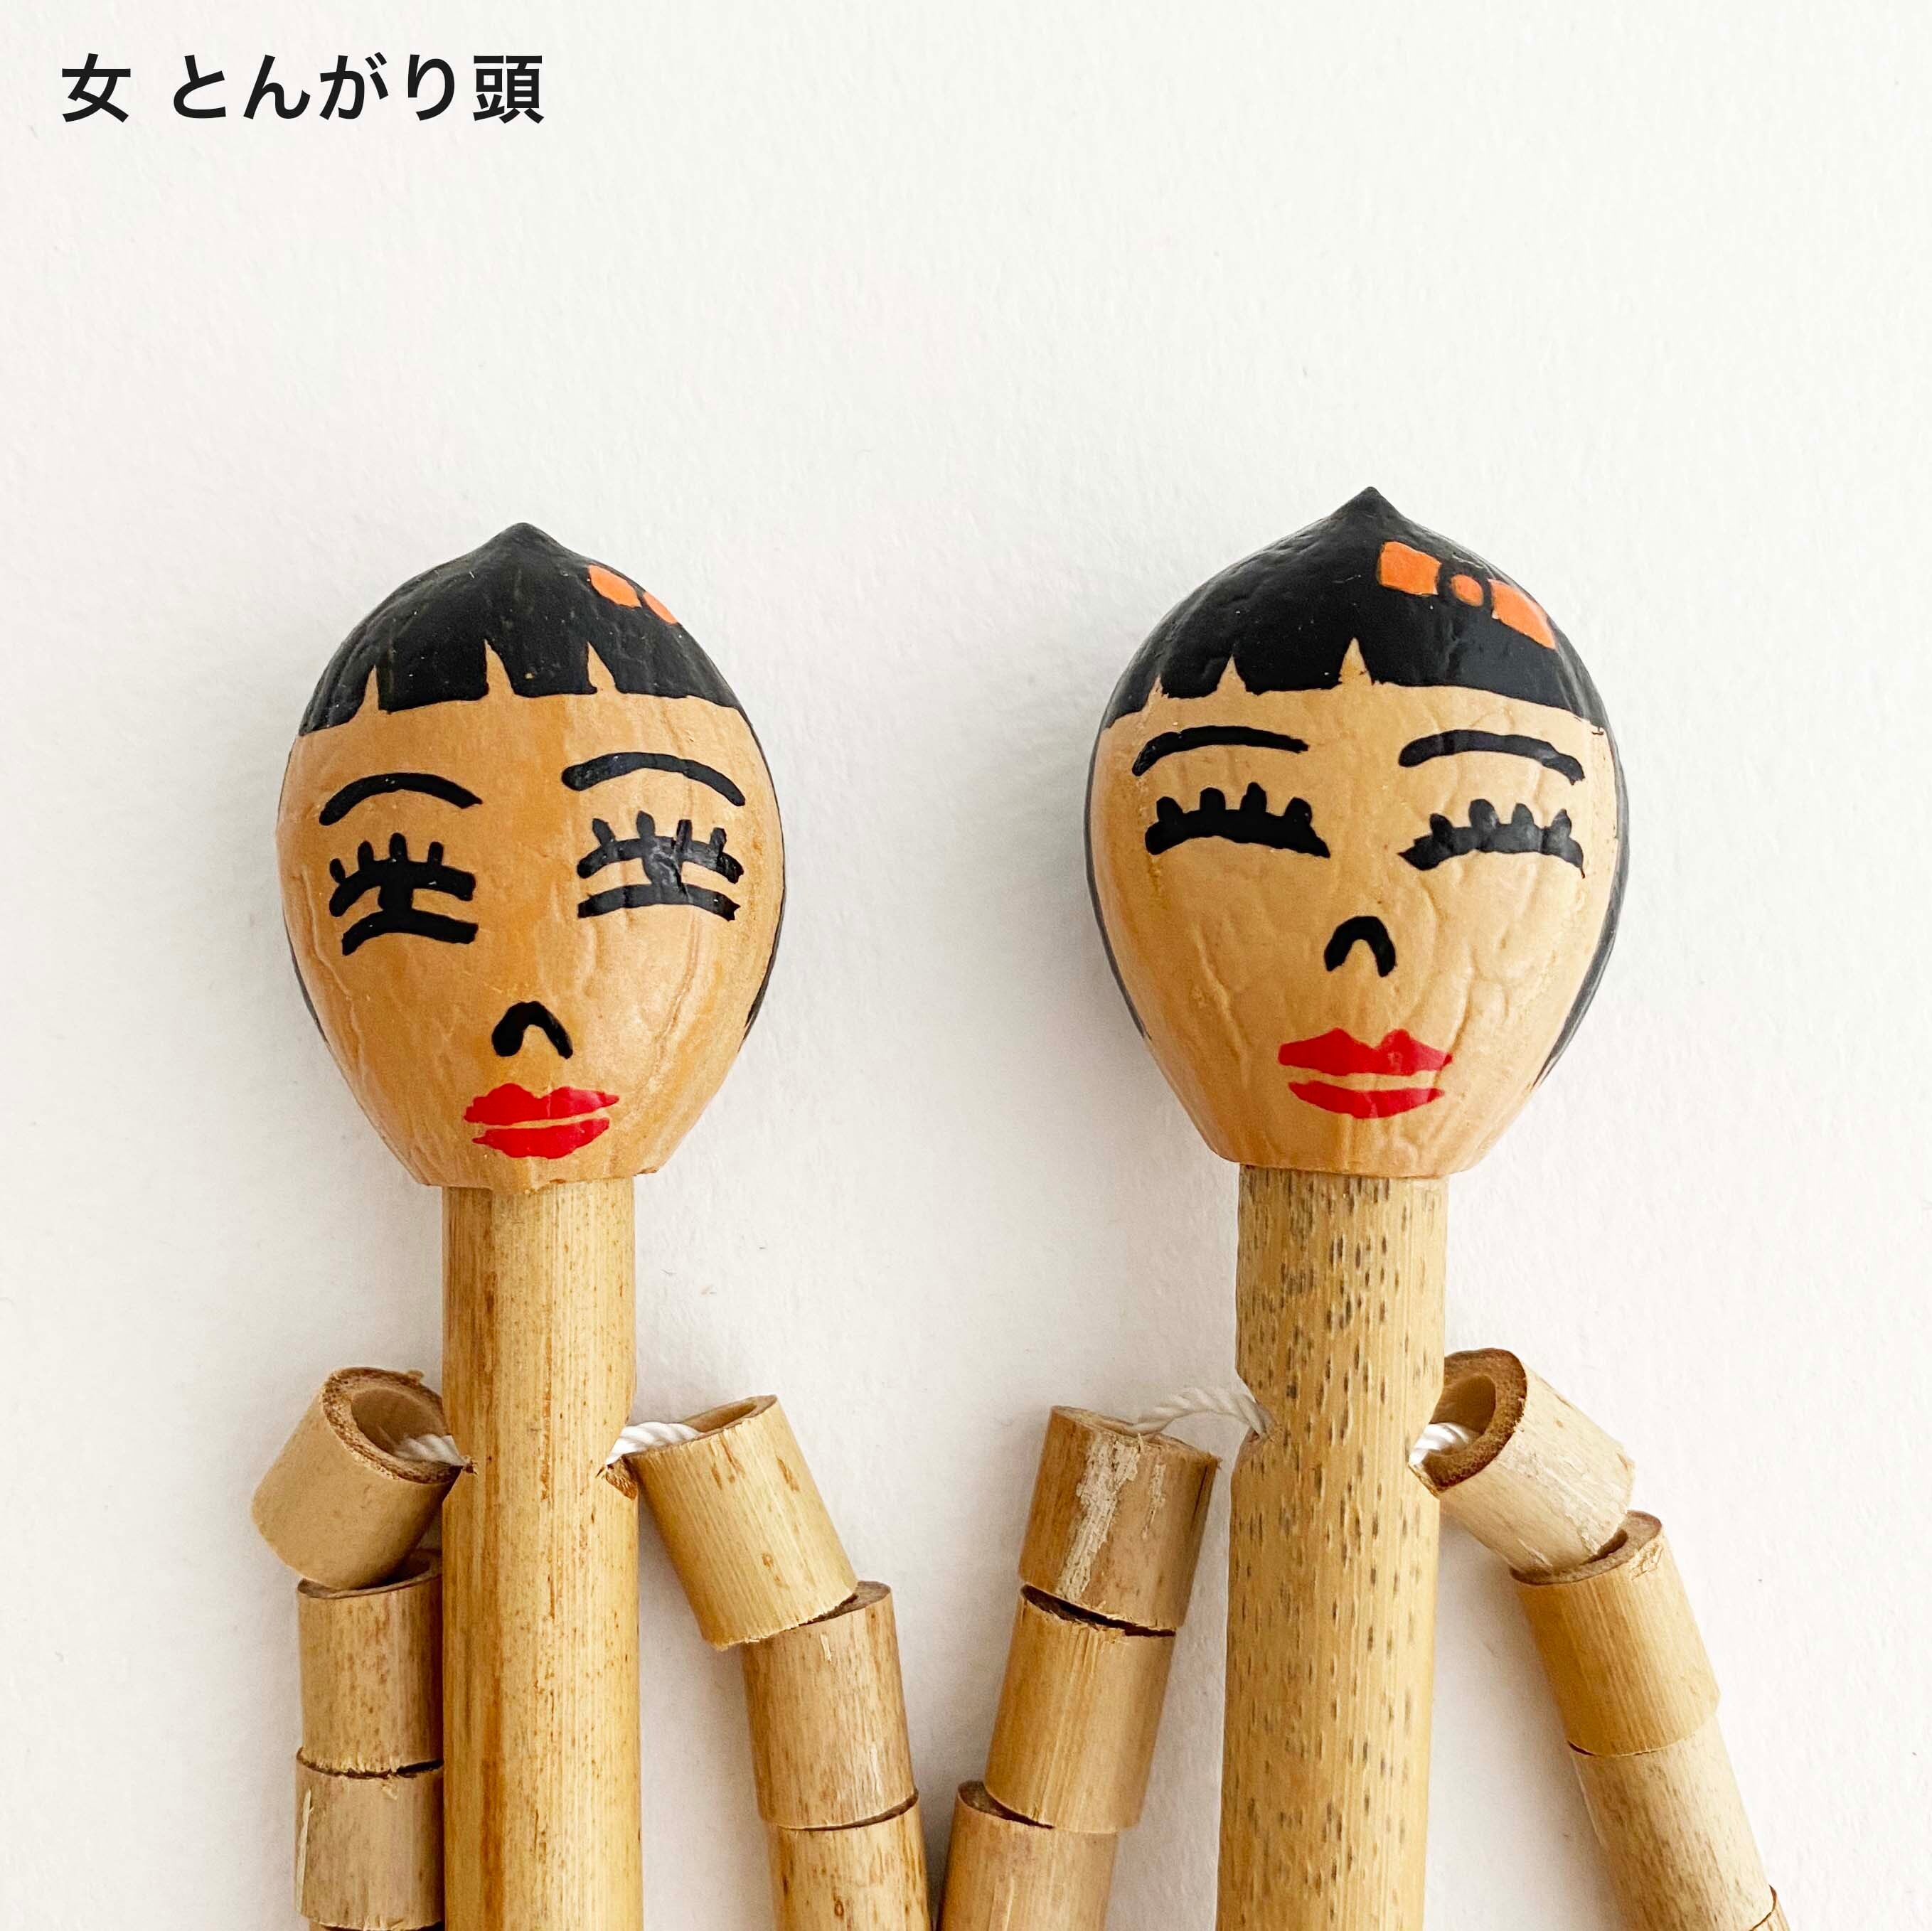 沖縄郷土玩具「竹人形」